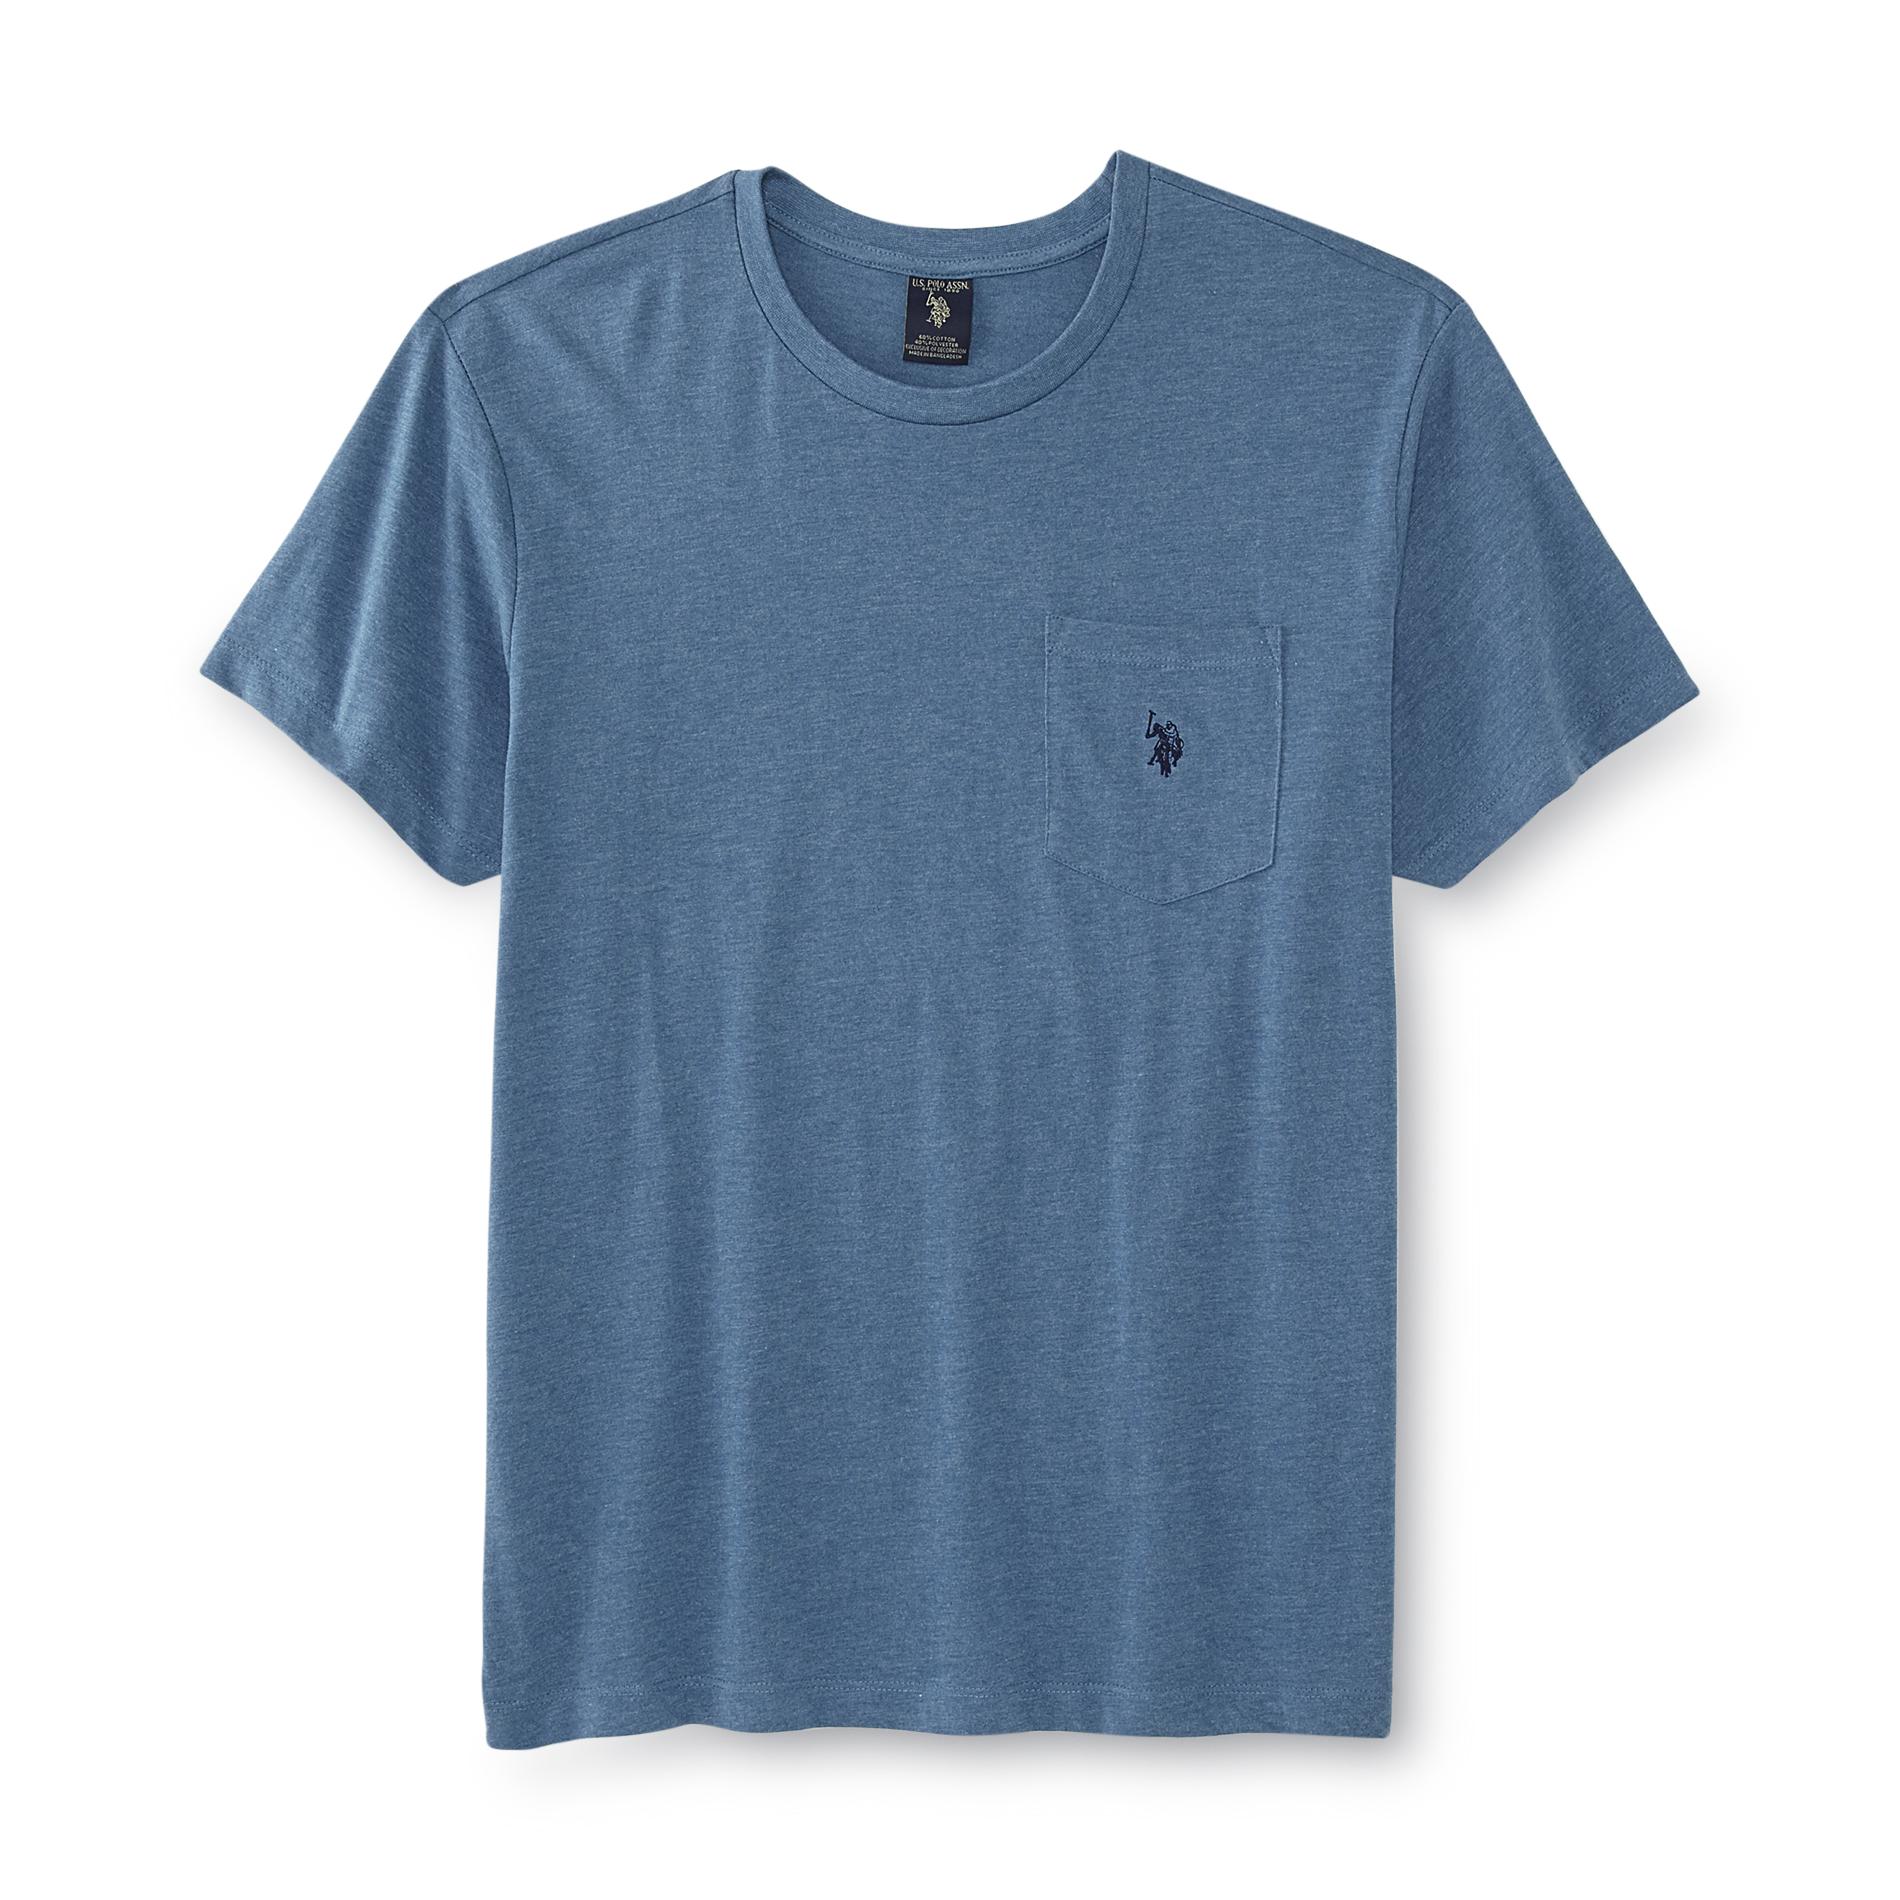 U.S. Polo Assn. Men's Jersey Knit Pocket T-Shirt